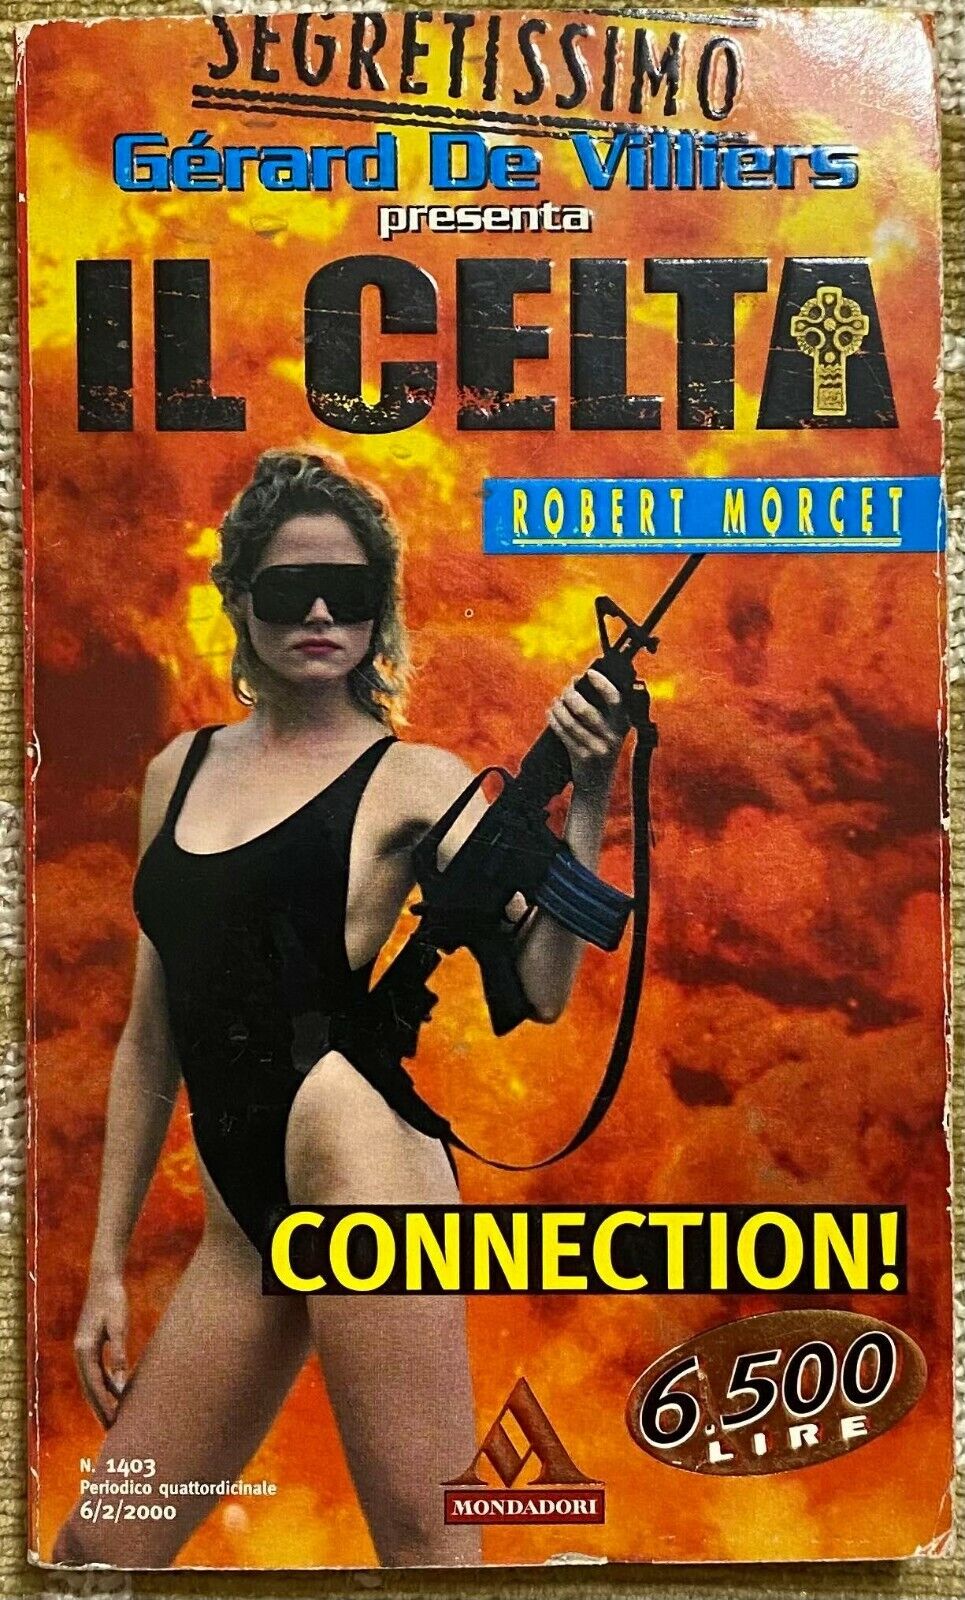 Il celta connection - Robert Morcet - Mondadori - 2000 - M